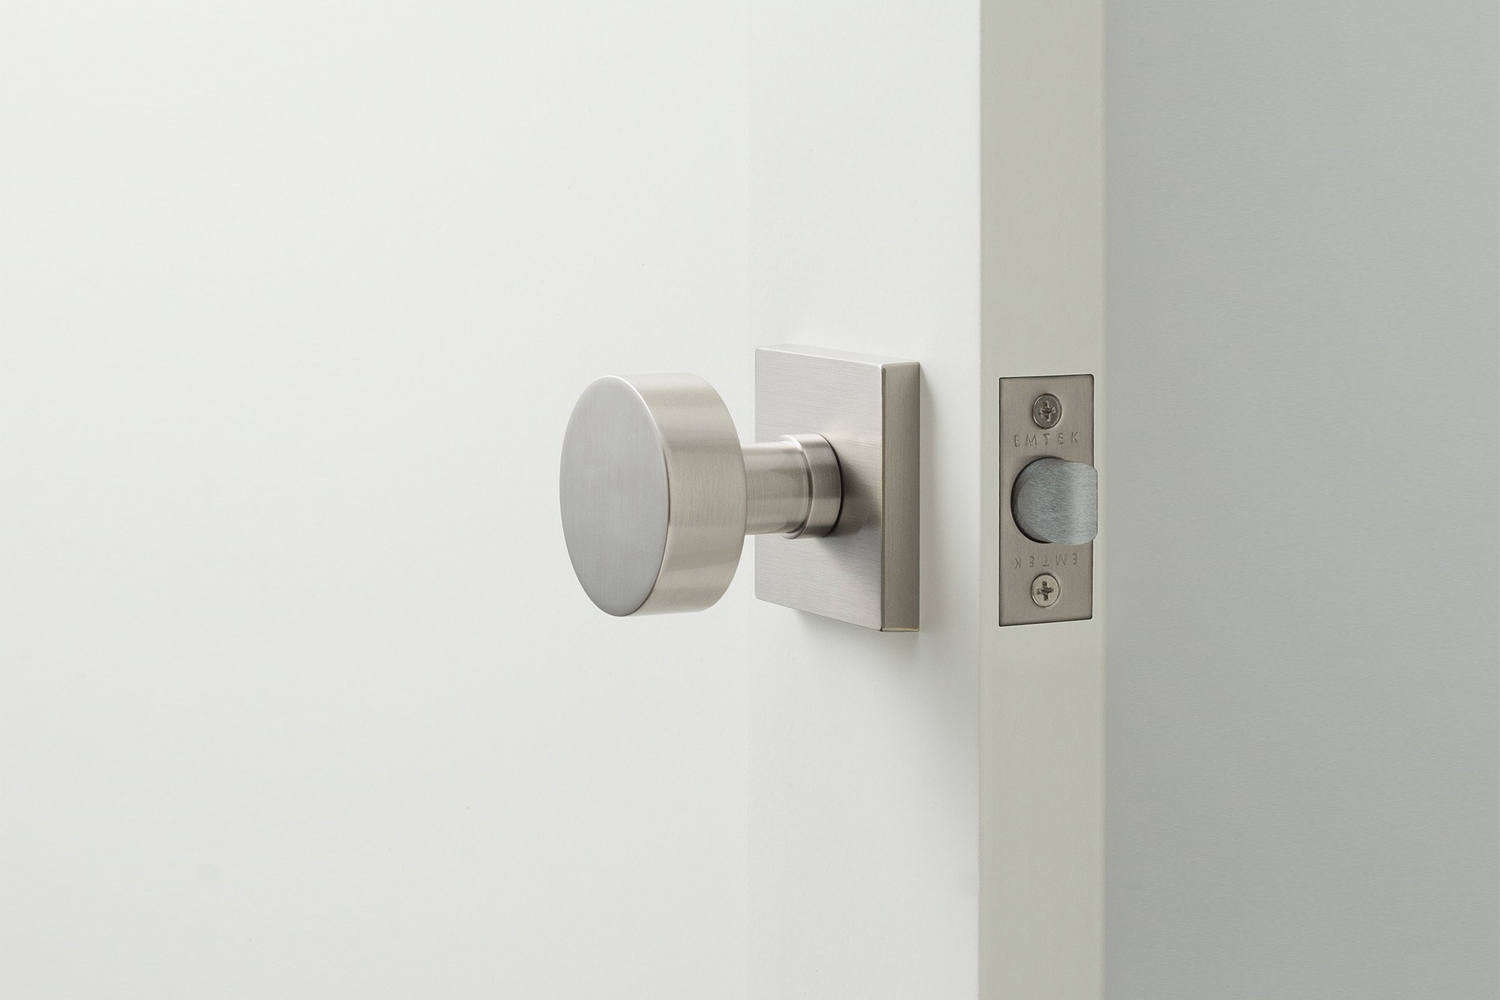 https://www.remodelista.com/wp-content/uploads/2012/10/schoolhouse-electric-berlin-door-set-cylinder-knob-satin-nickel.jpg